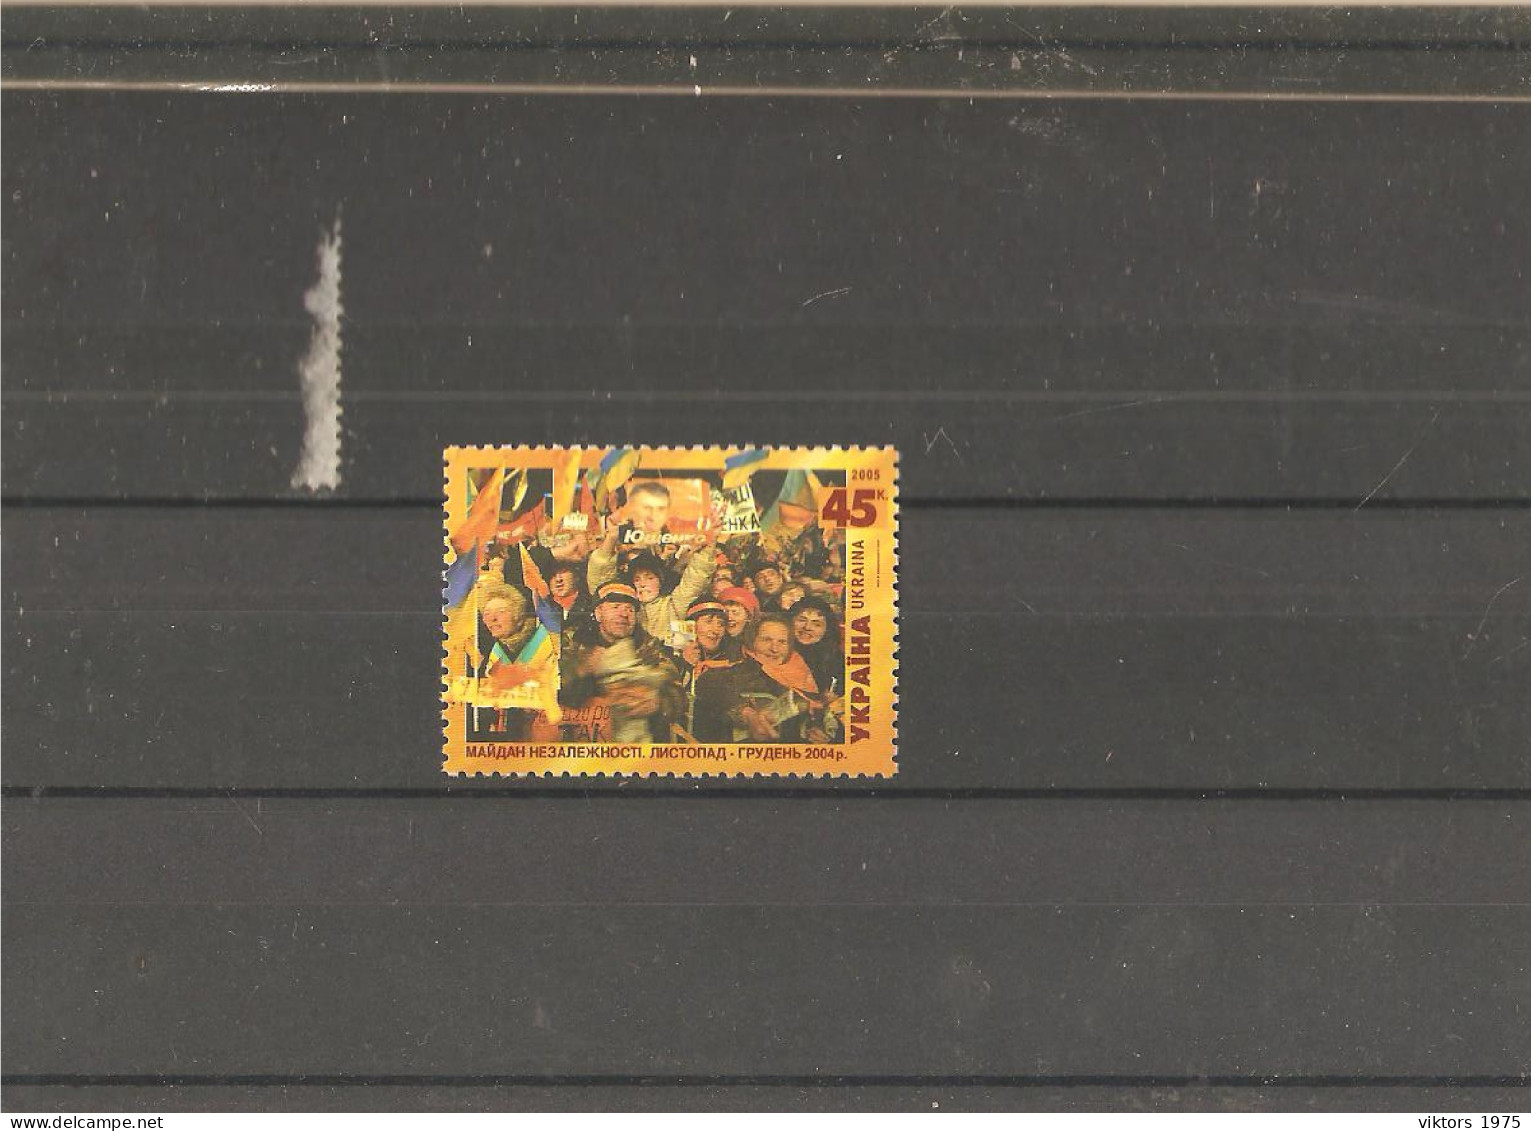 MNH Stamp Nr.695 In MICHEL Catalog - Ukraine